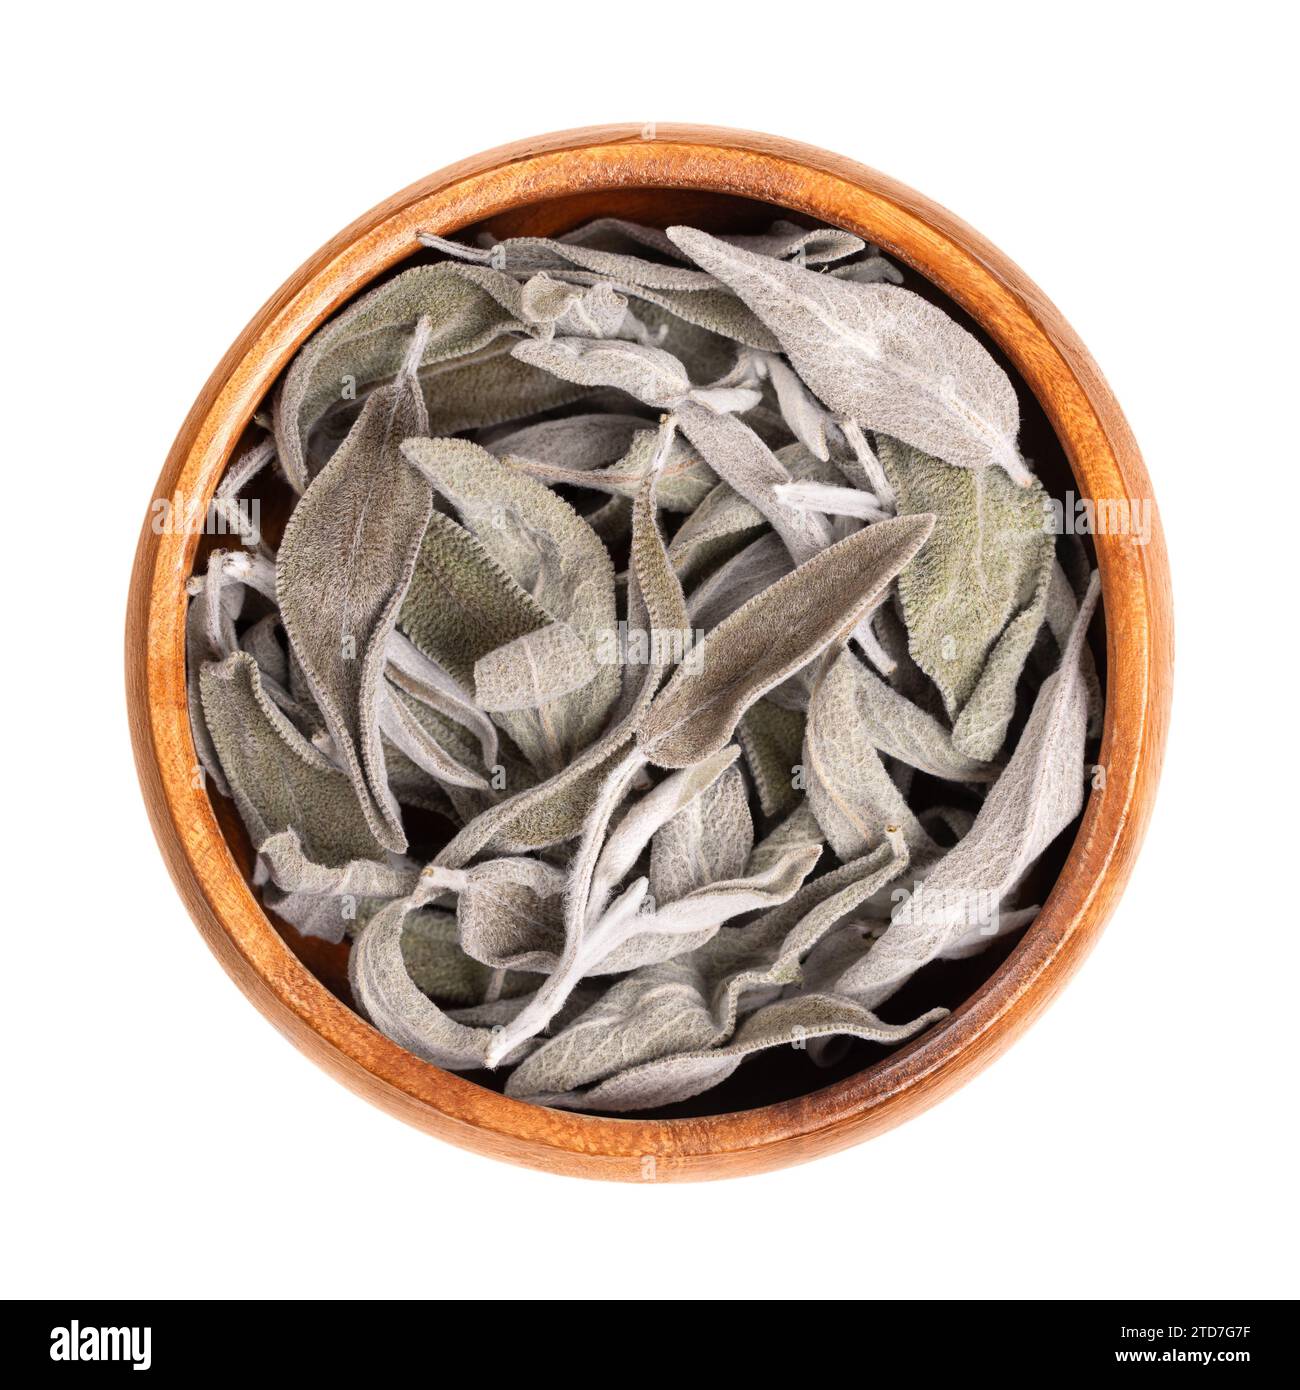 Feuilles de sauge séchées, dans un bol en bois. Sauge commune, Salvia officinalis. Herbe vert grisâtre avec des feuilles veloutées. Épice, plante médicinale, comme encens. Banque D'Images